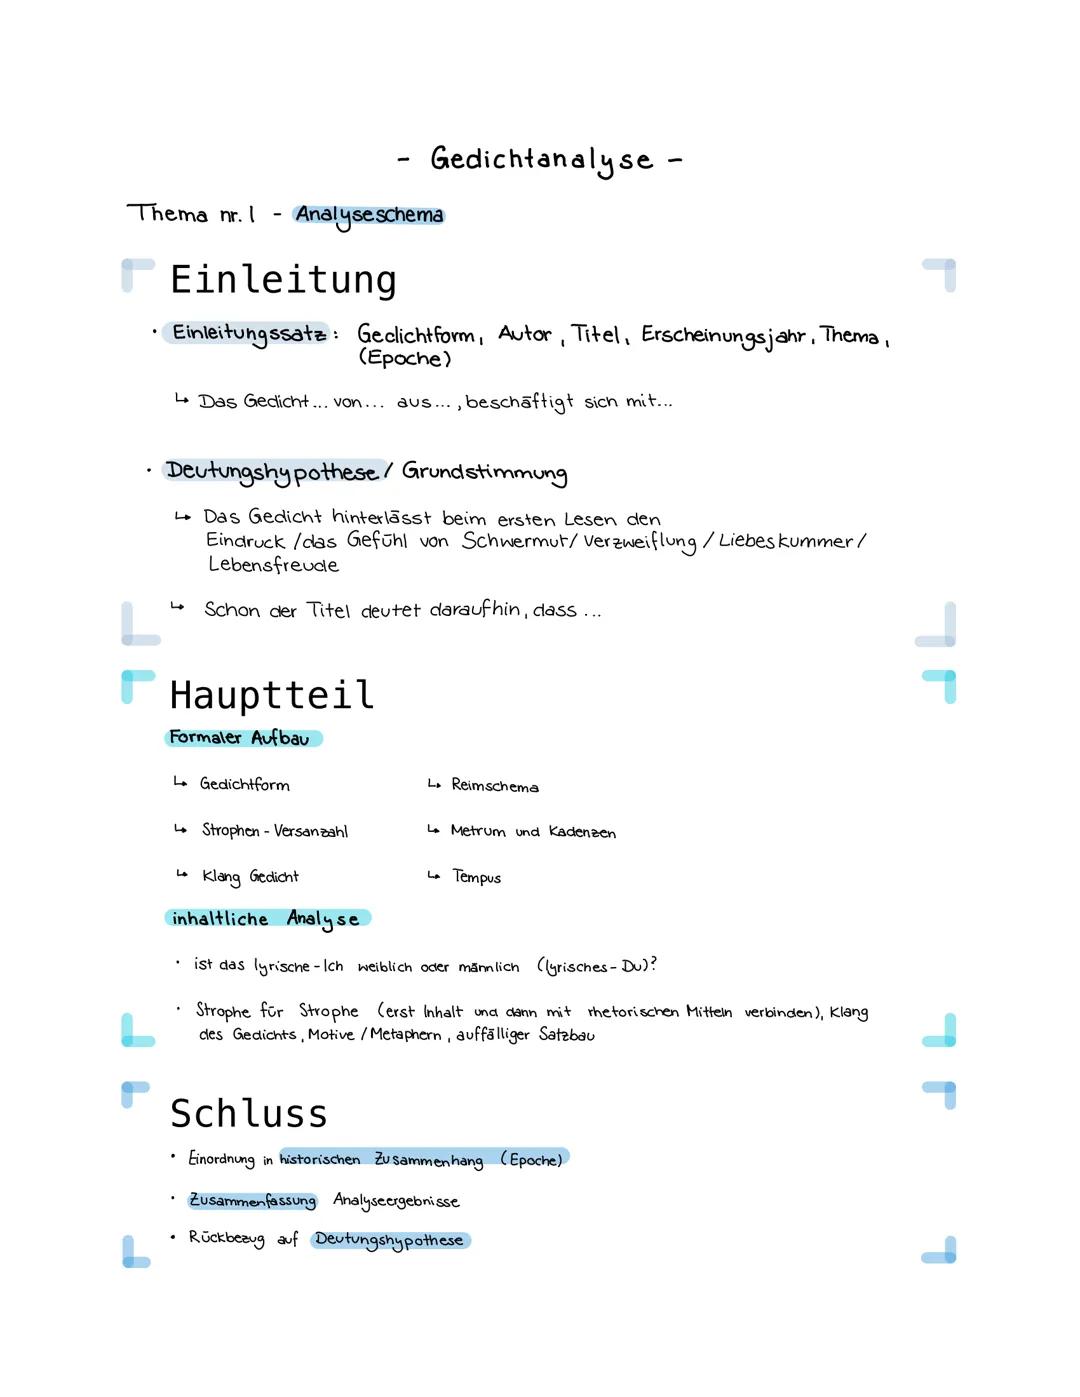 Thema nr. I Analyse schema
Einleitung
• Einleitungssatz: Geclichtform, Autor, Titel, Erscheinungsjahr, Thema,
(Epoche)
↳ Das Gedicht... von.